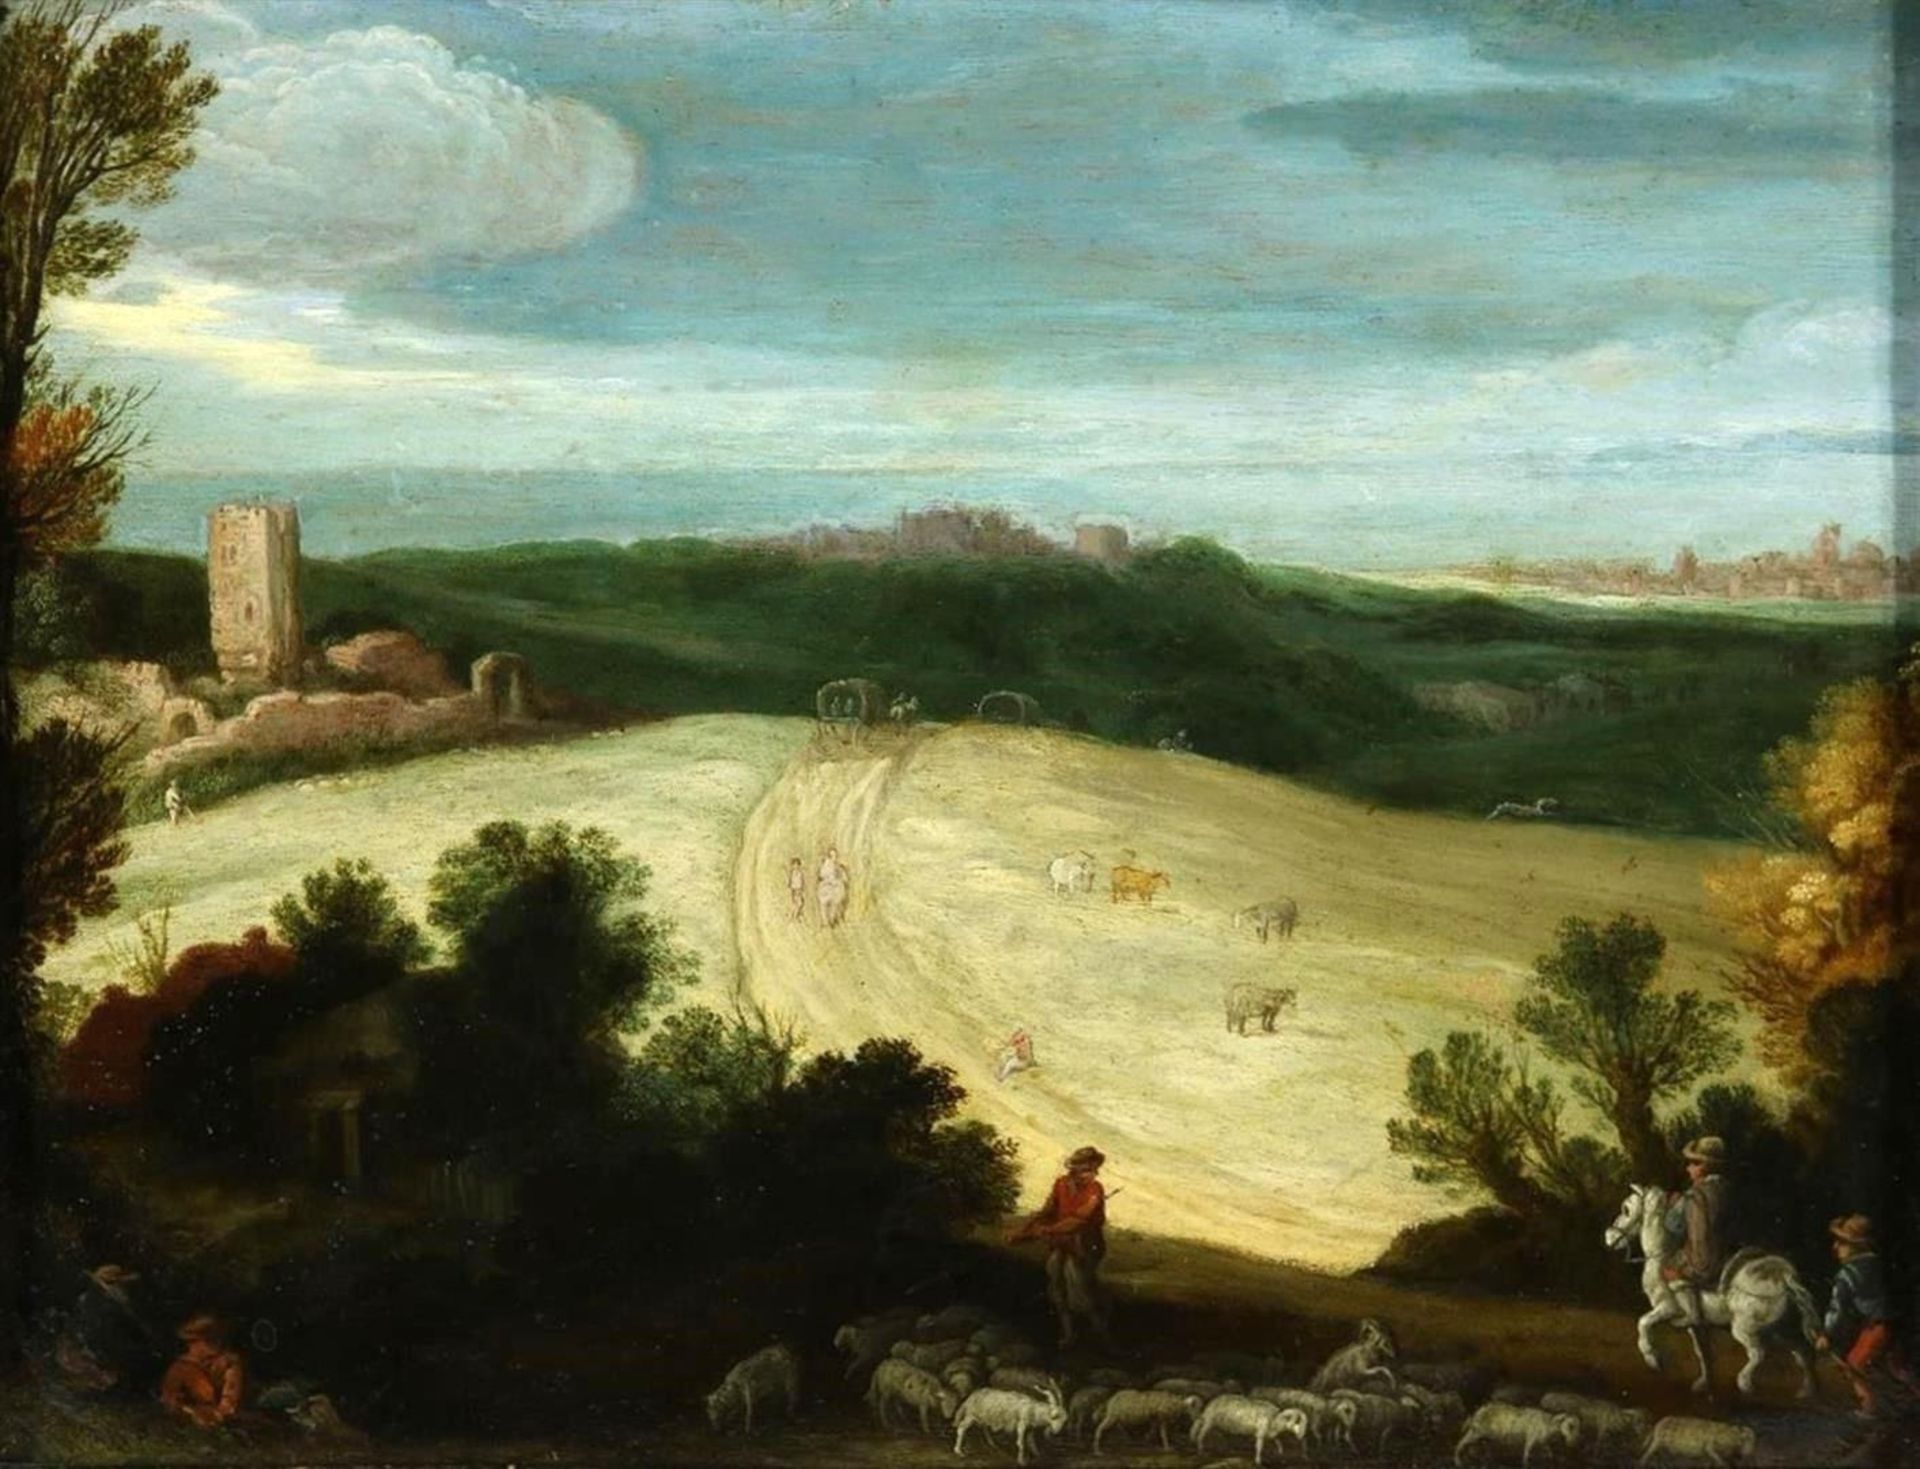 Workshop of Paul Bril (c.1553/4-1626) (ca.1620) "Landscape" Oil on coper.